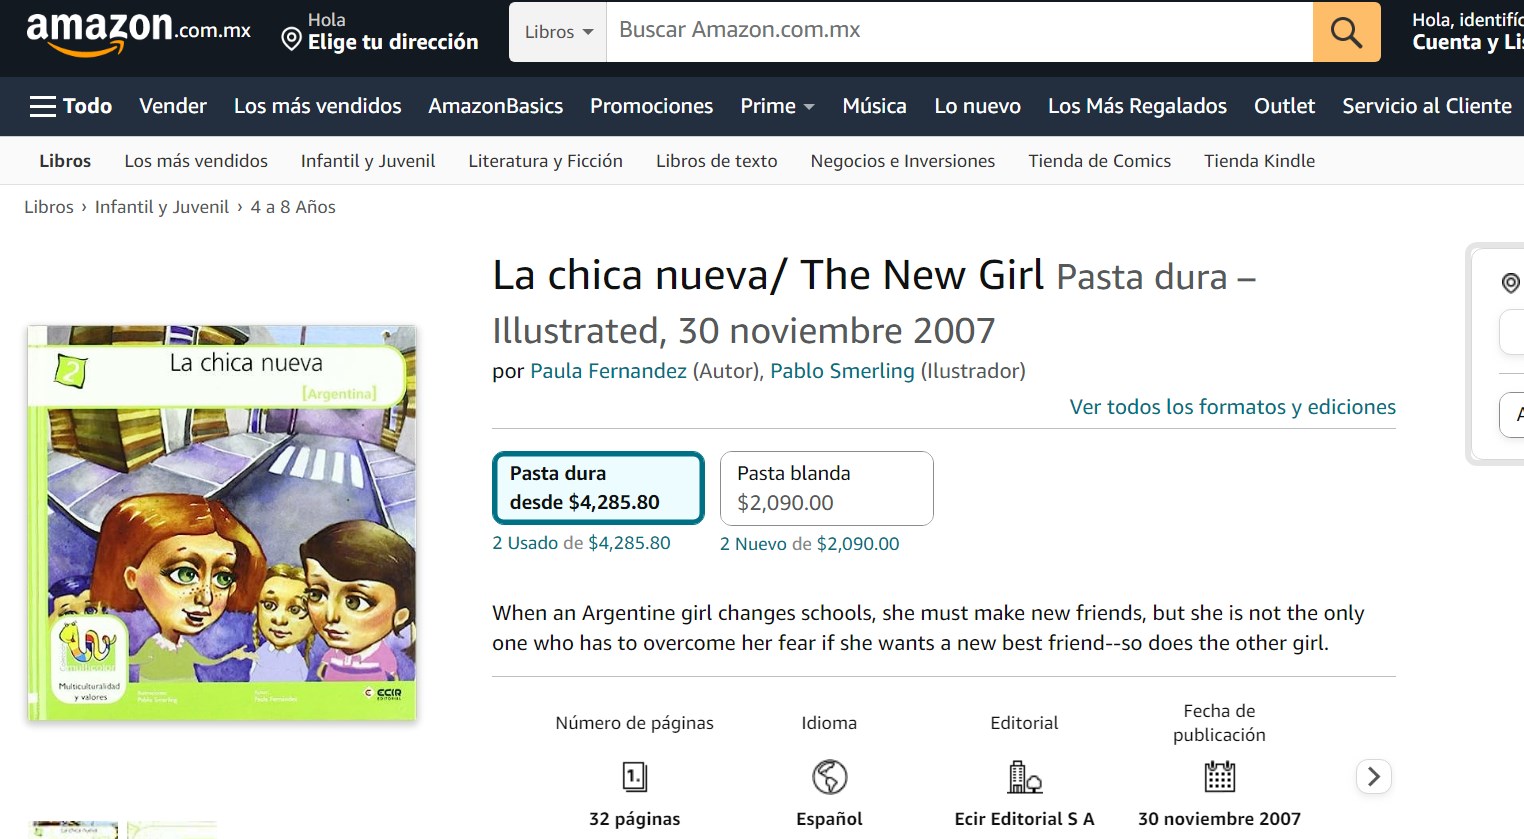 Libro: La chica nueva Argentina por Paula Fernandez